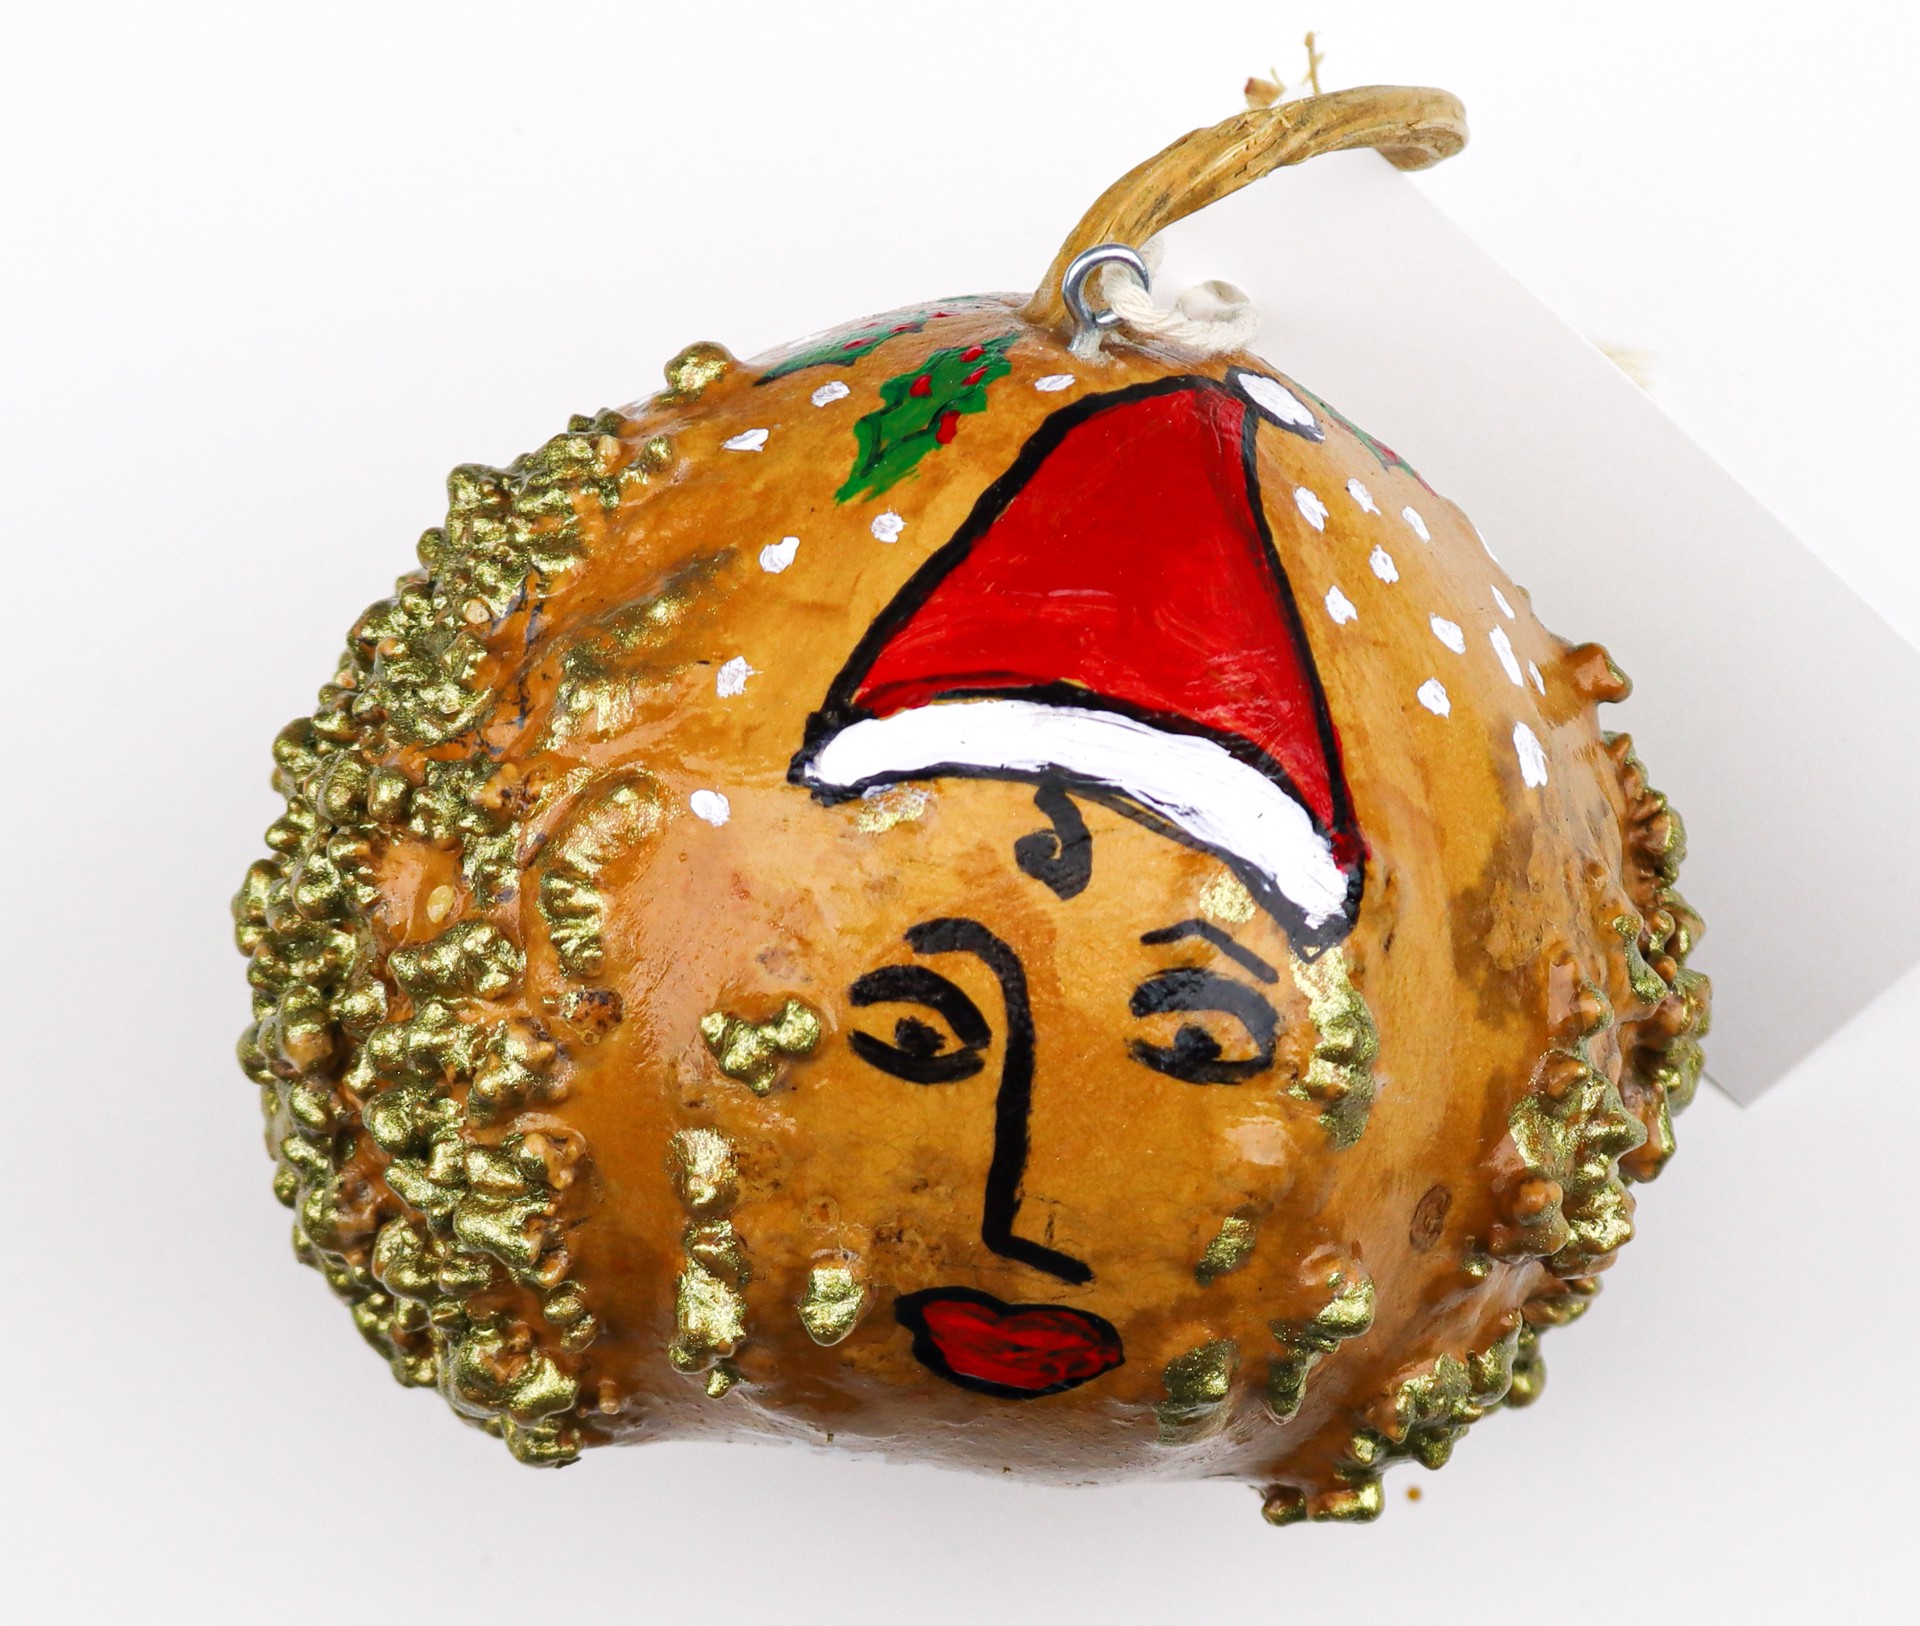 Merry Christmas, 2020 (gourd ornament) by Toni Lane by Toni Lane